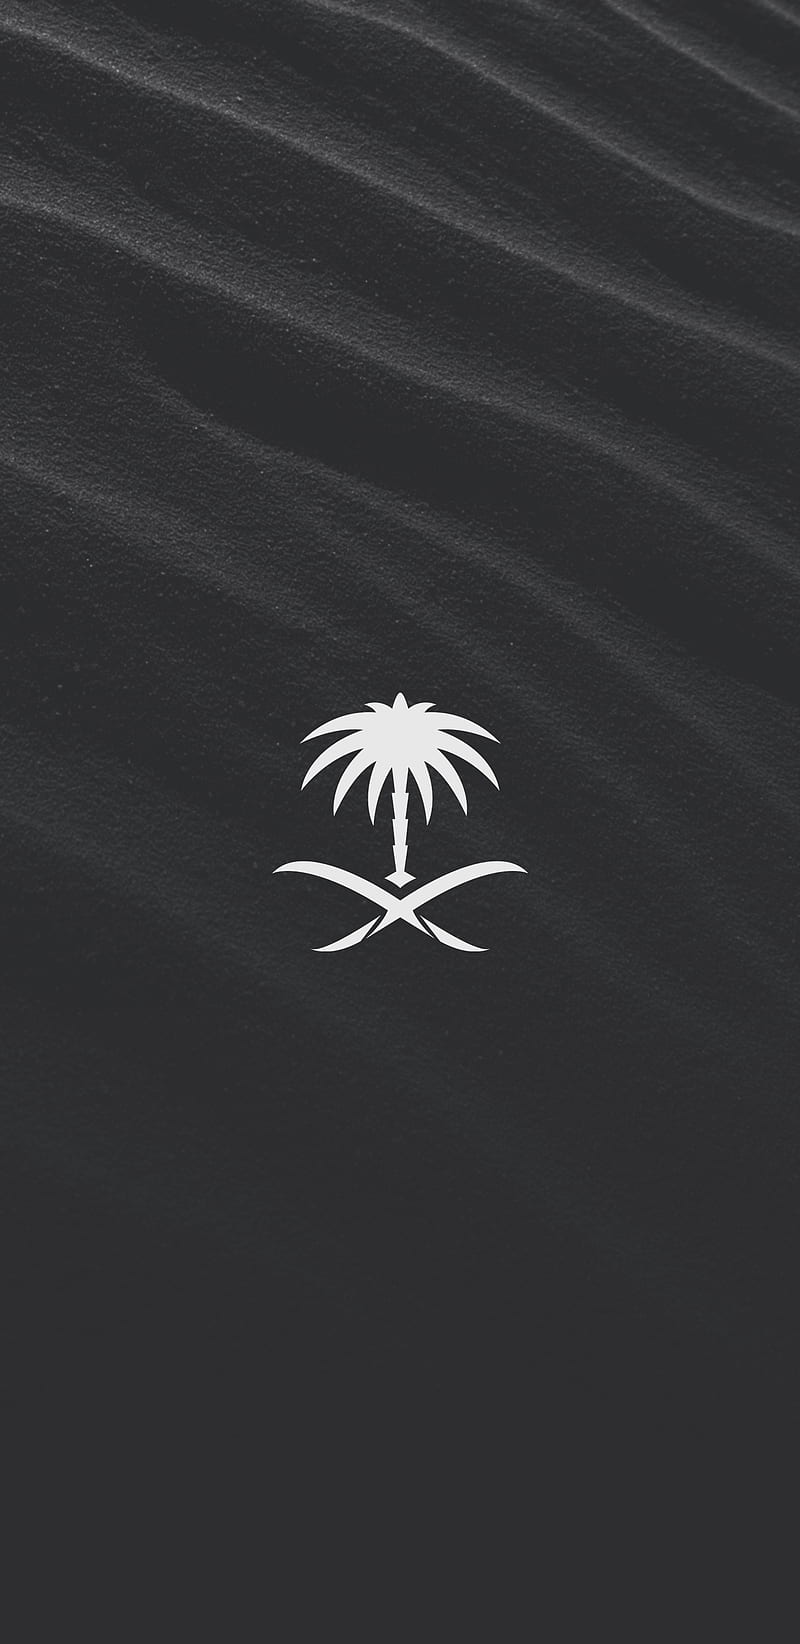 Saudi Arabia, flag, ksa, saudi, logo, black, dark, arab, HD phone wallpaper